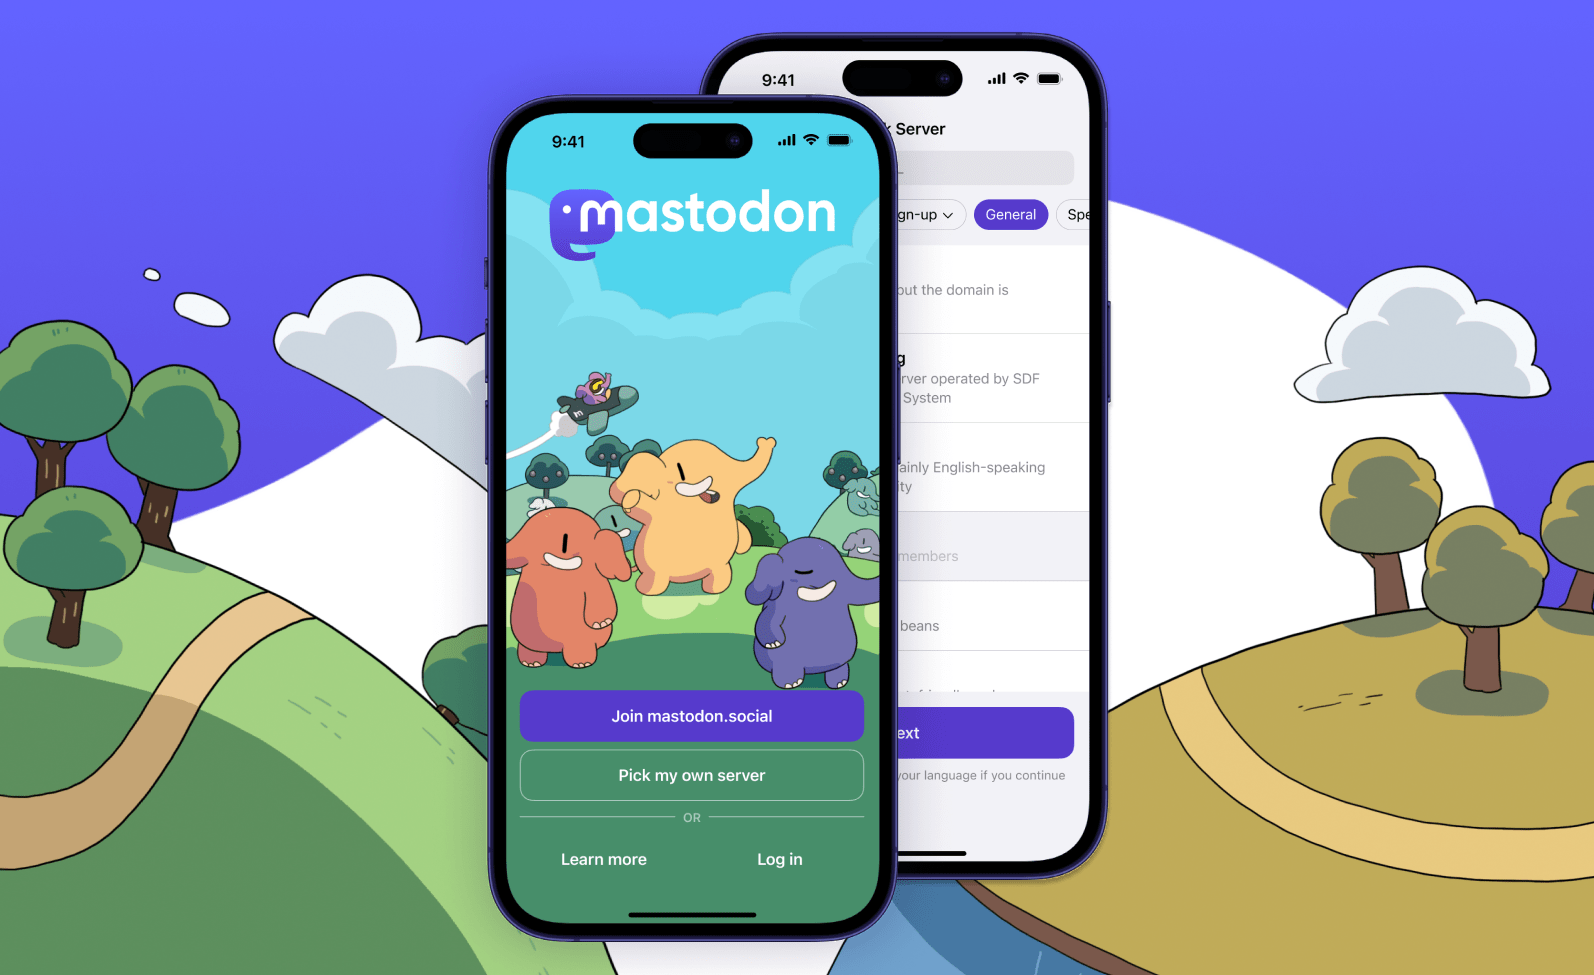 Dois prints do aplicativo do Mastodon para iOS, mostrando a tela inicial com destaque para o botão “entrar no mastodon.social”.